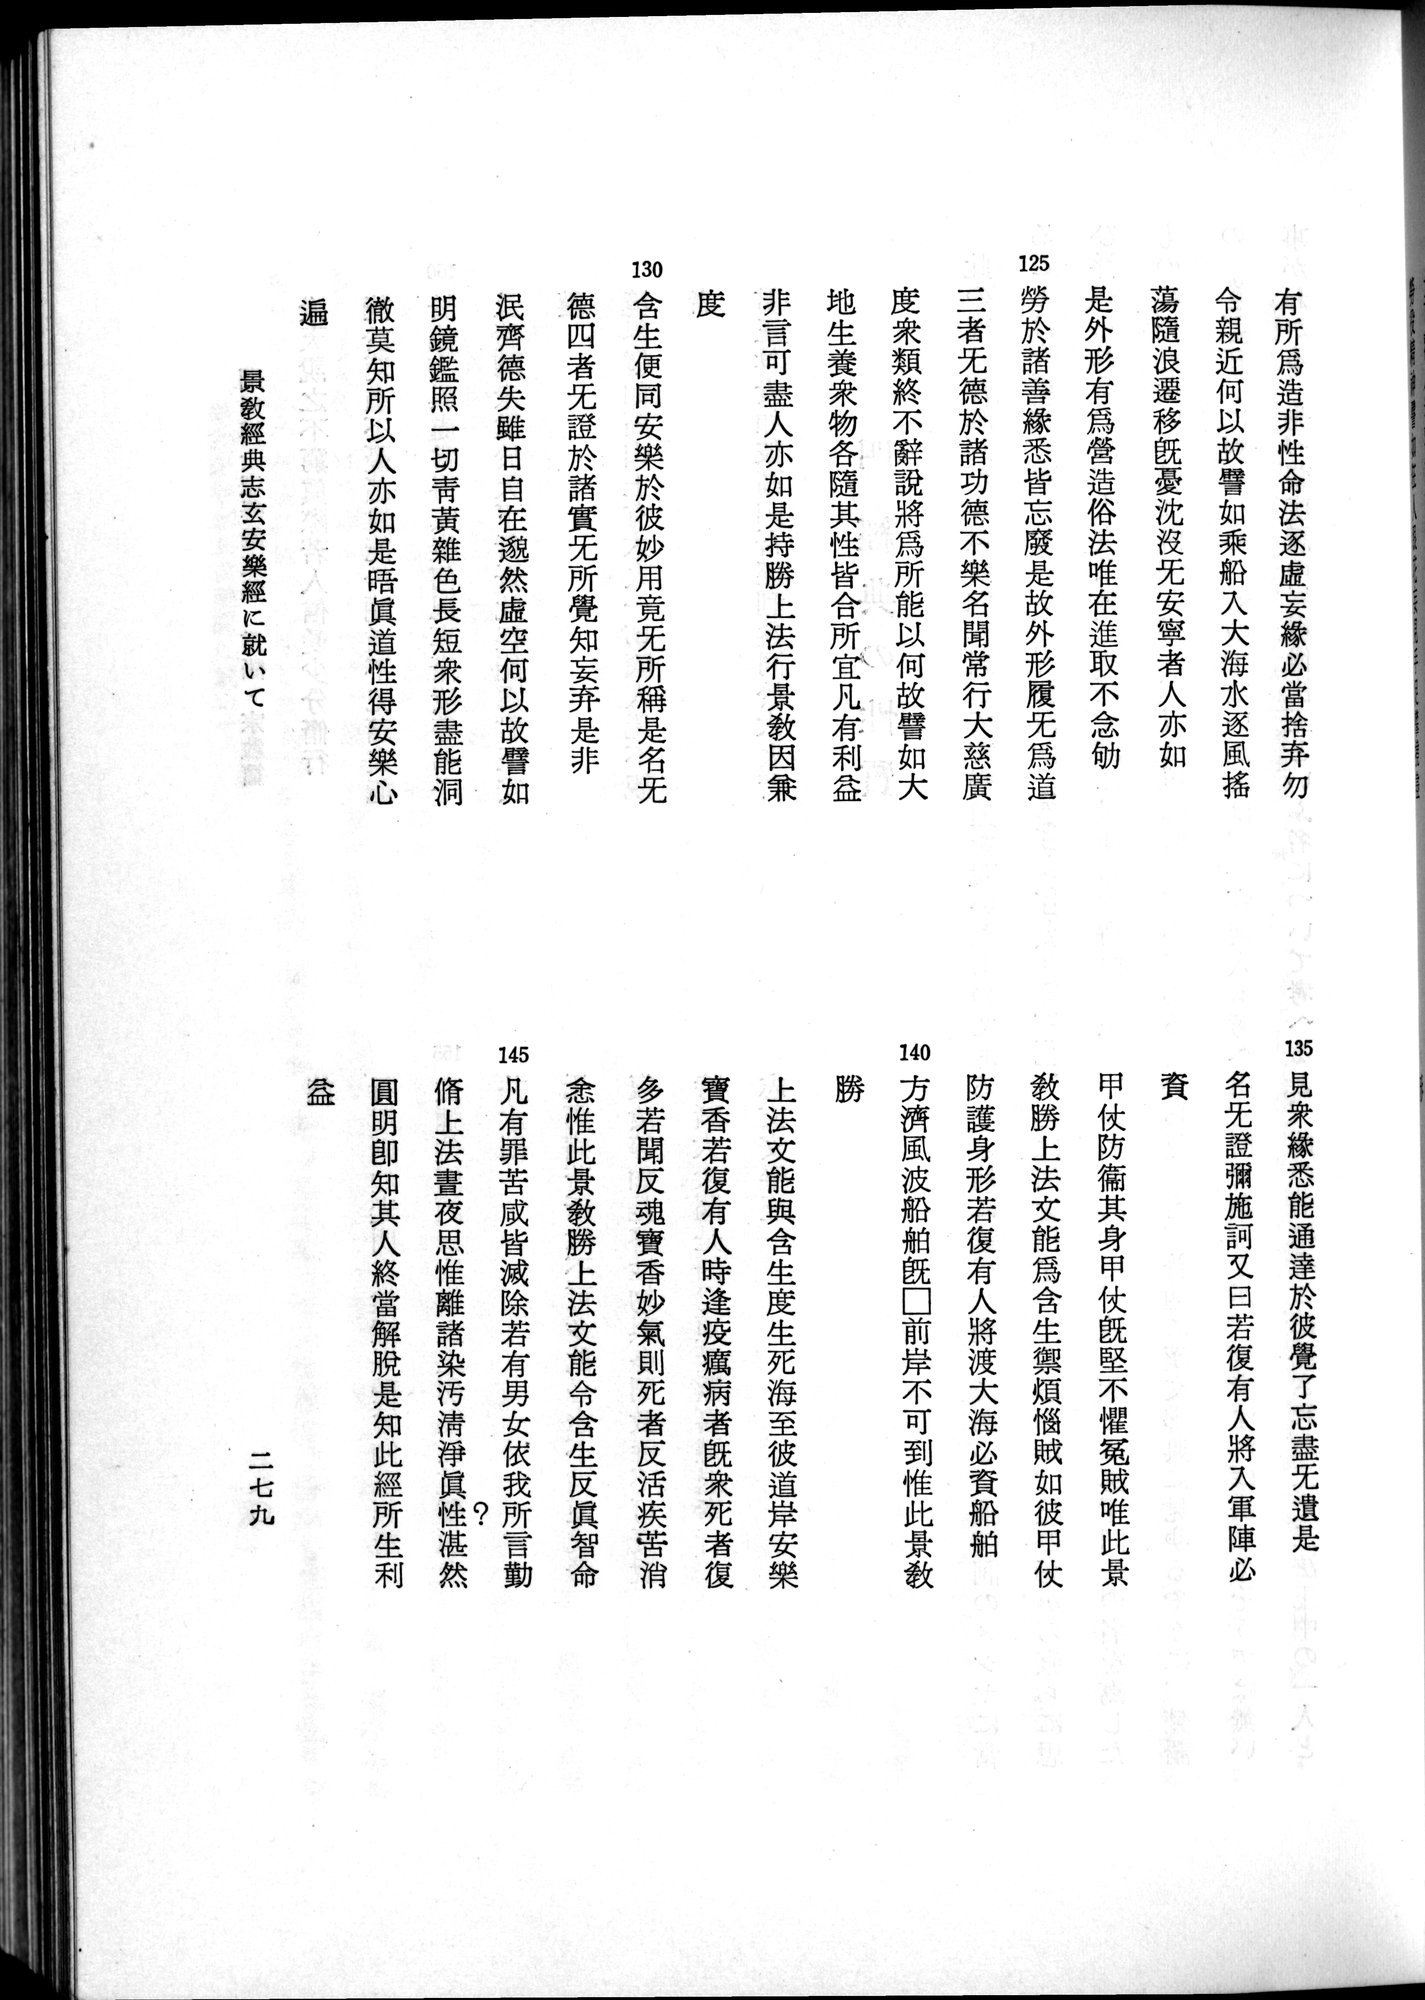 羽田博士史学論文集 : vol.2 / 341 ページ（白黒高解像度画像）